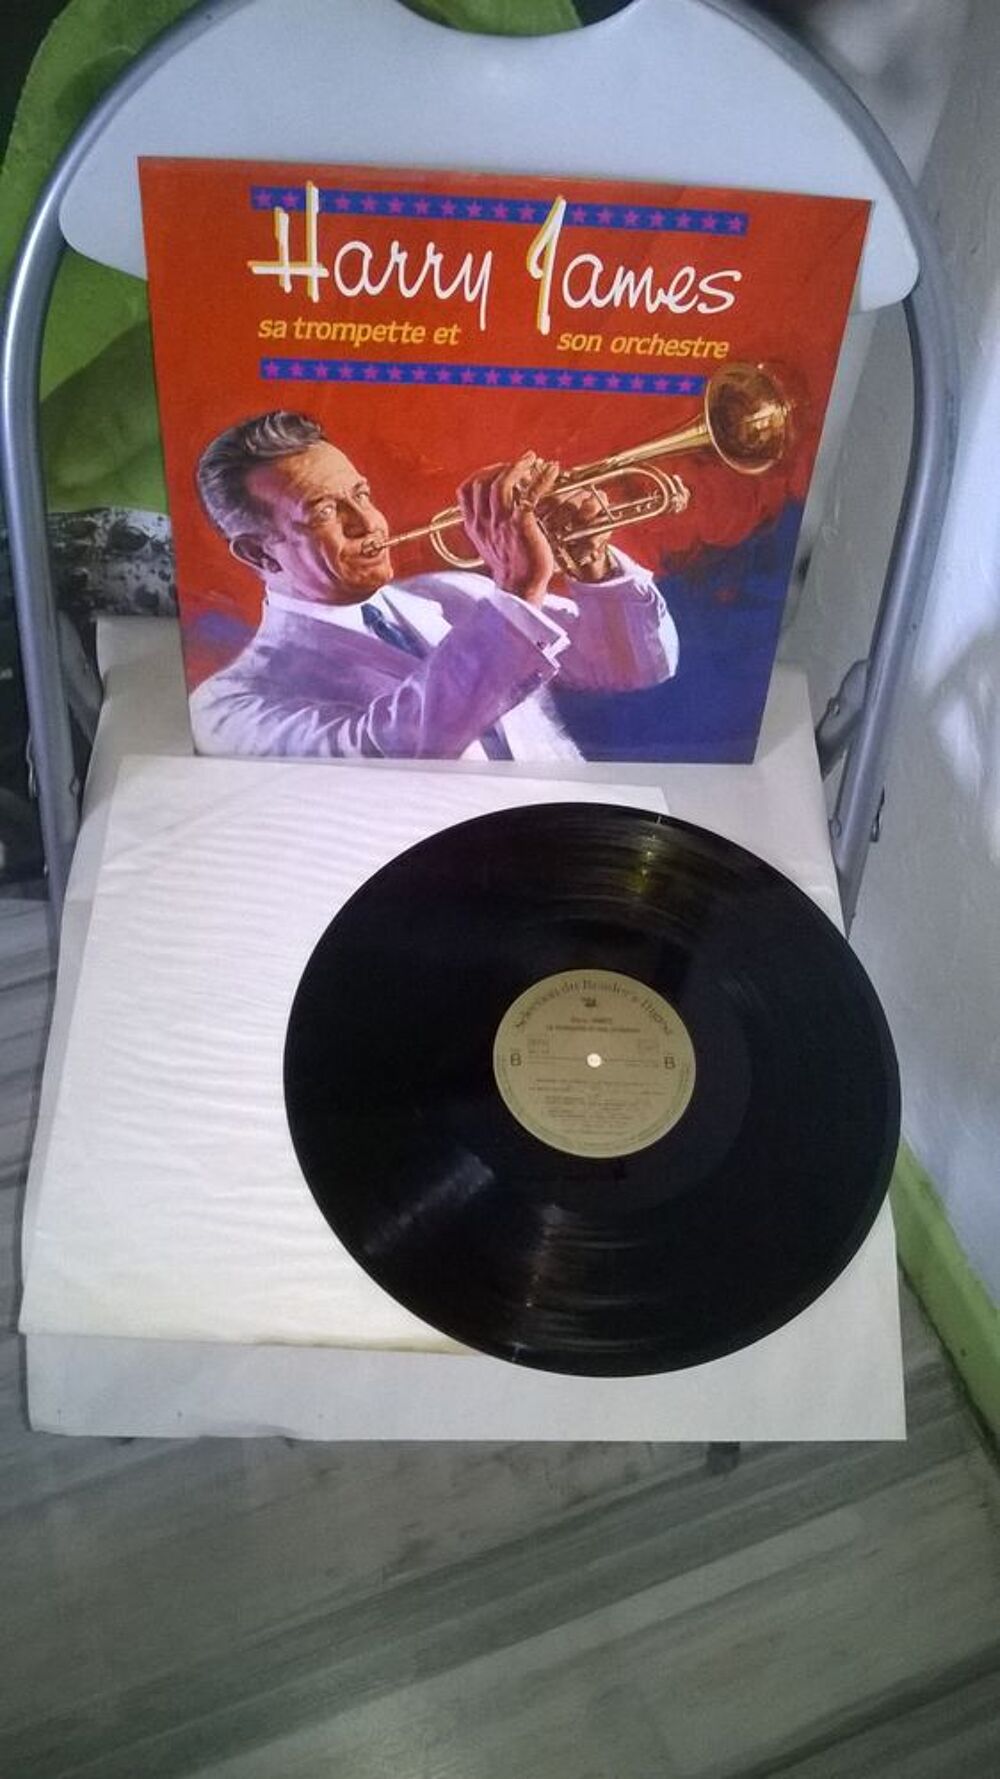 Vinyle harry james
sa trompette et son orchestre
1985
Exc CD et vinyles